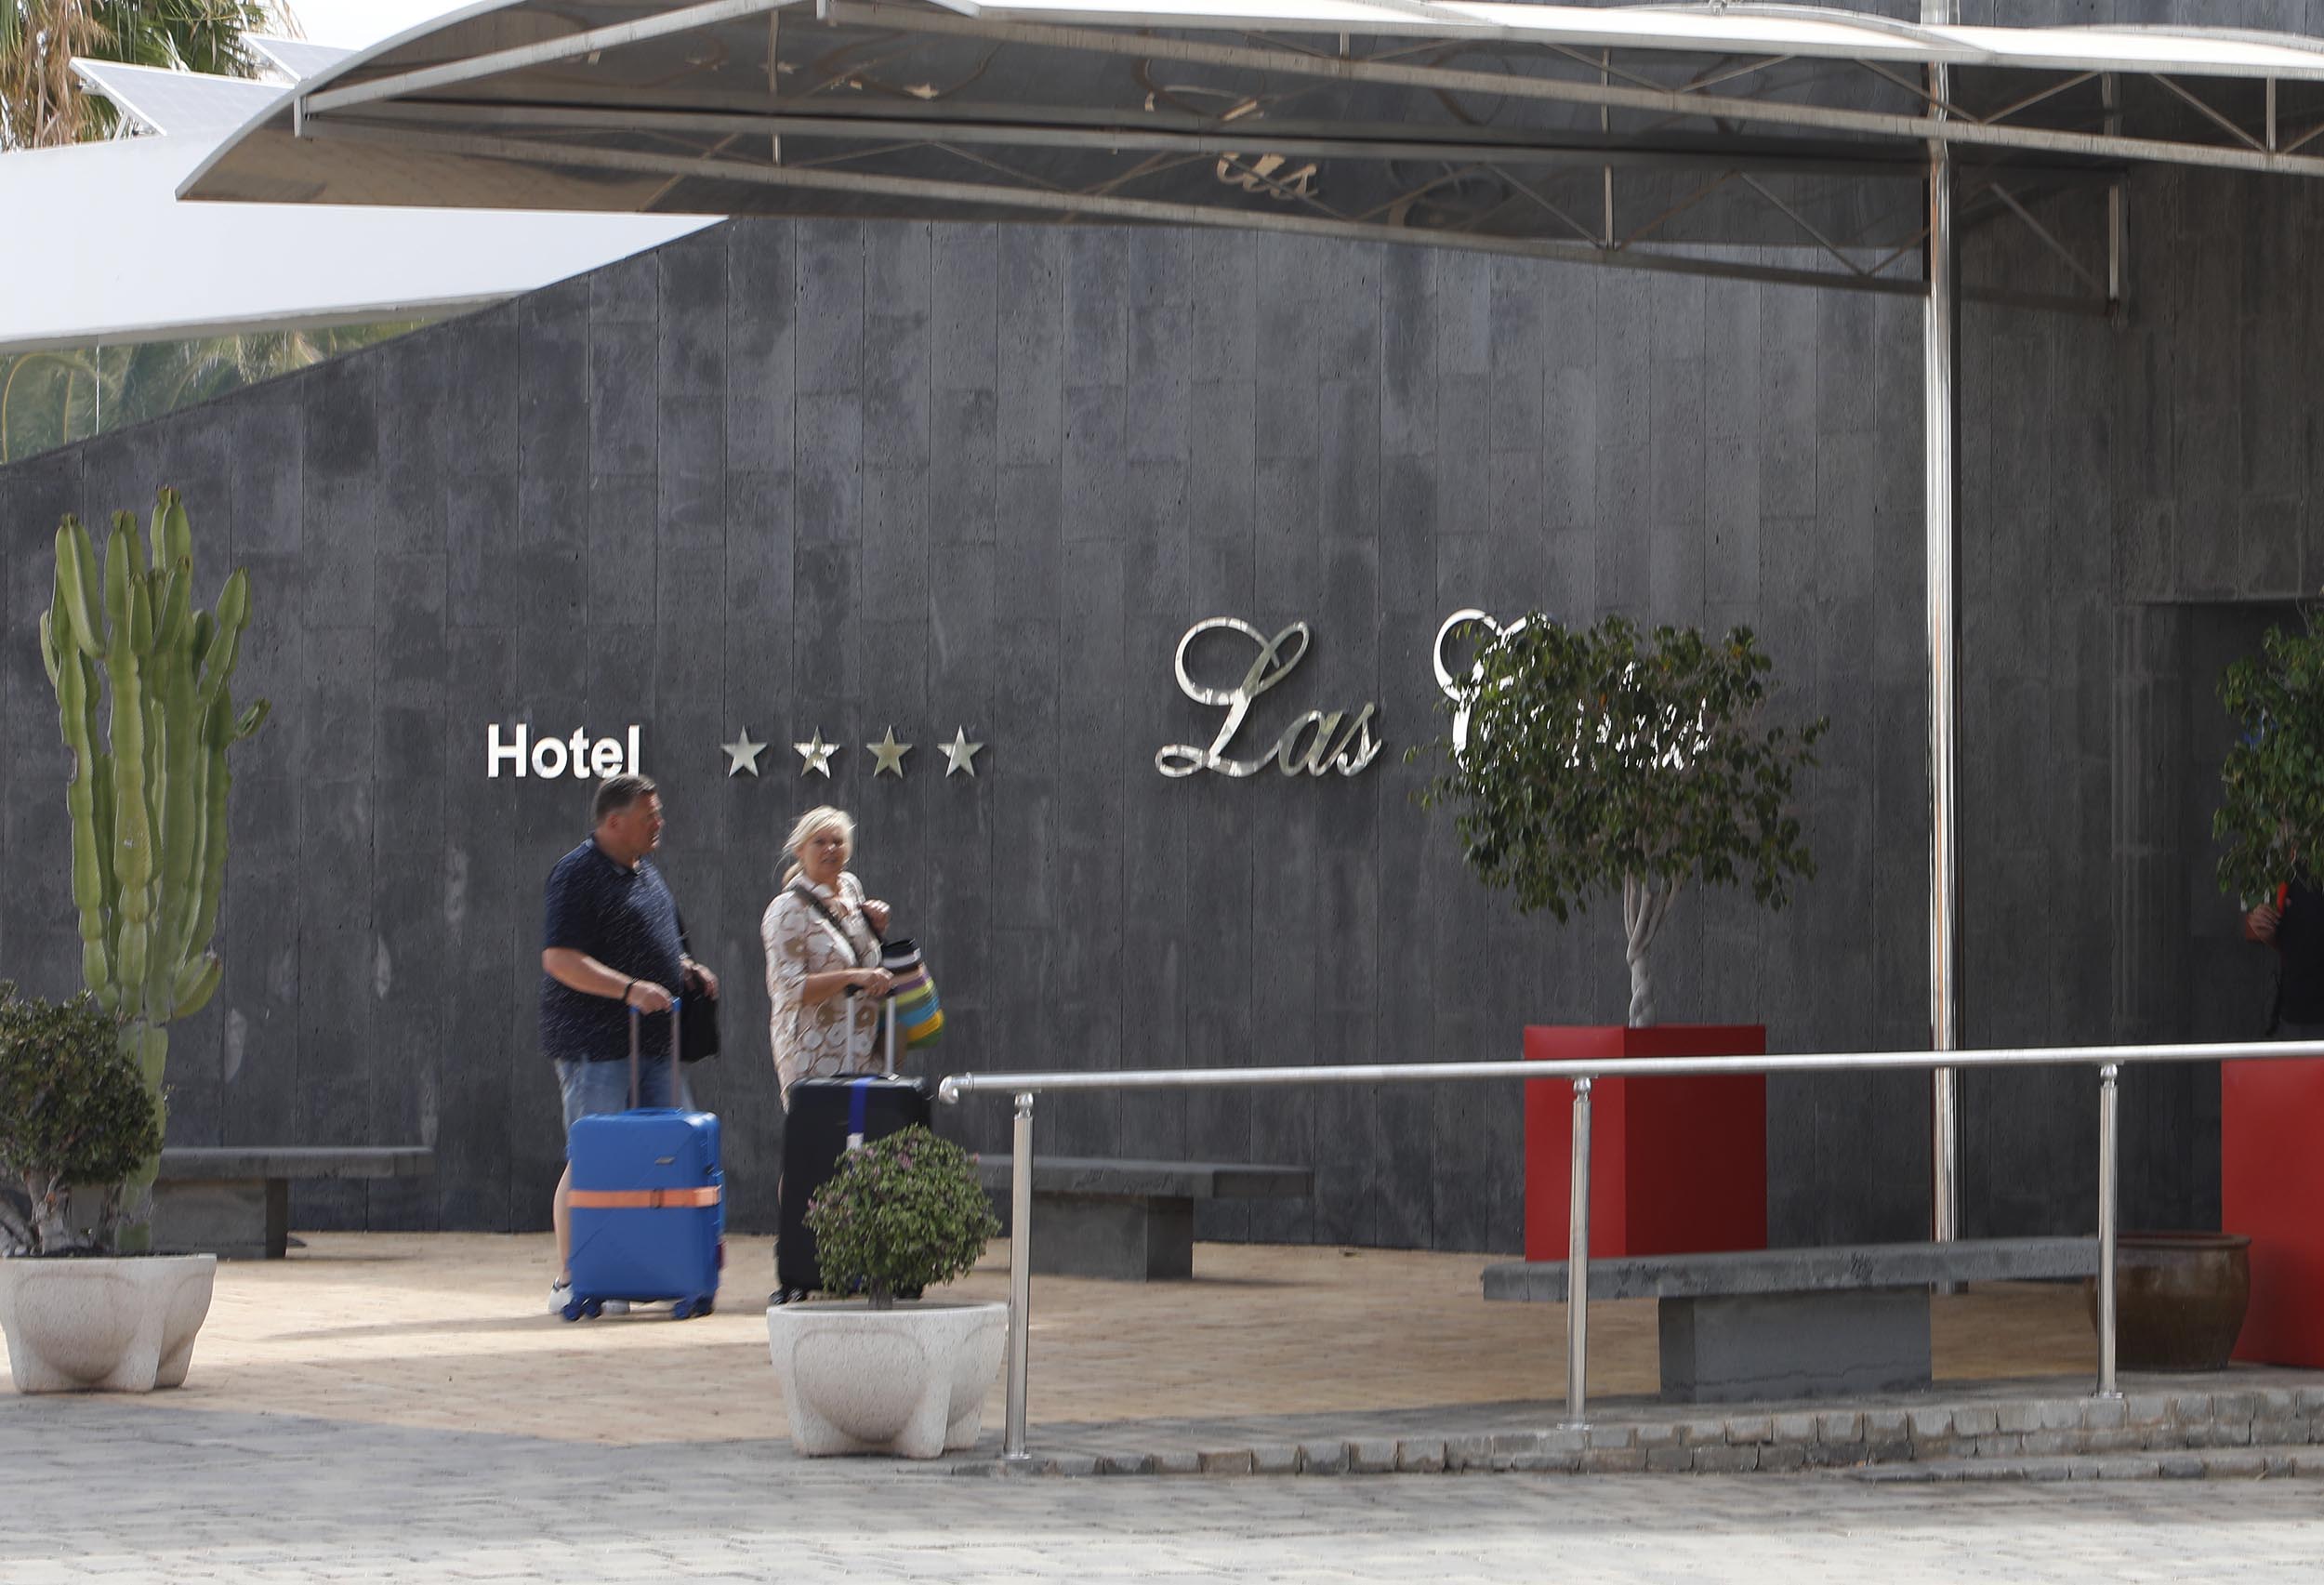 Turistas en hoteles de Lanzarote. Foto: José Luis Carrasco.